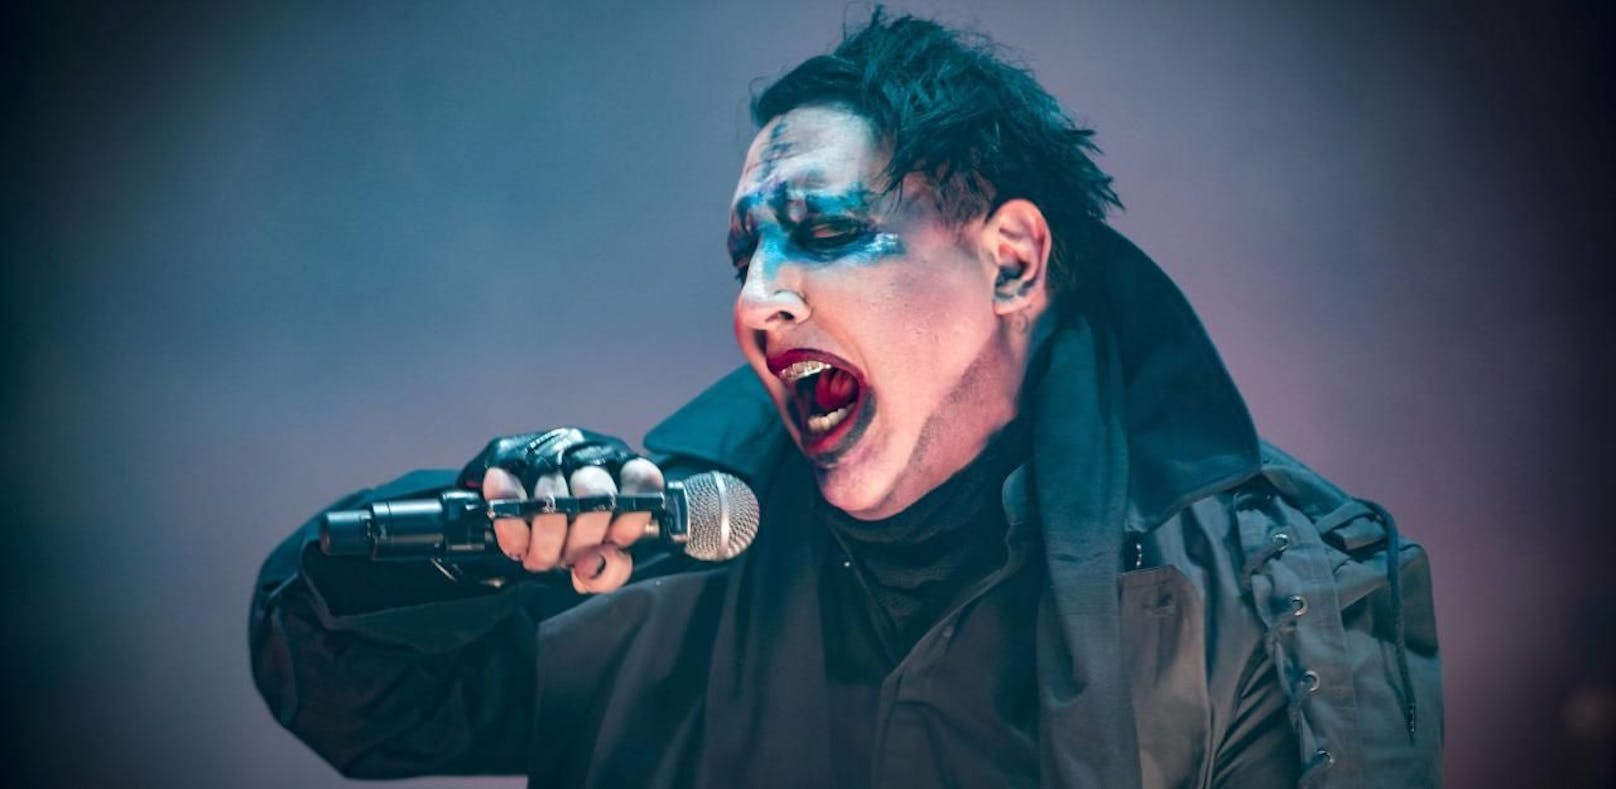 Nervenzusammenbruch? Manson bricht Konzert ab